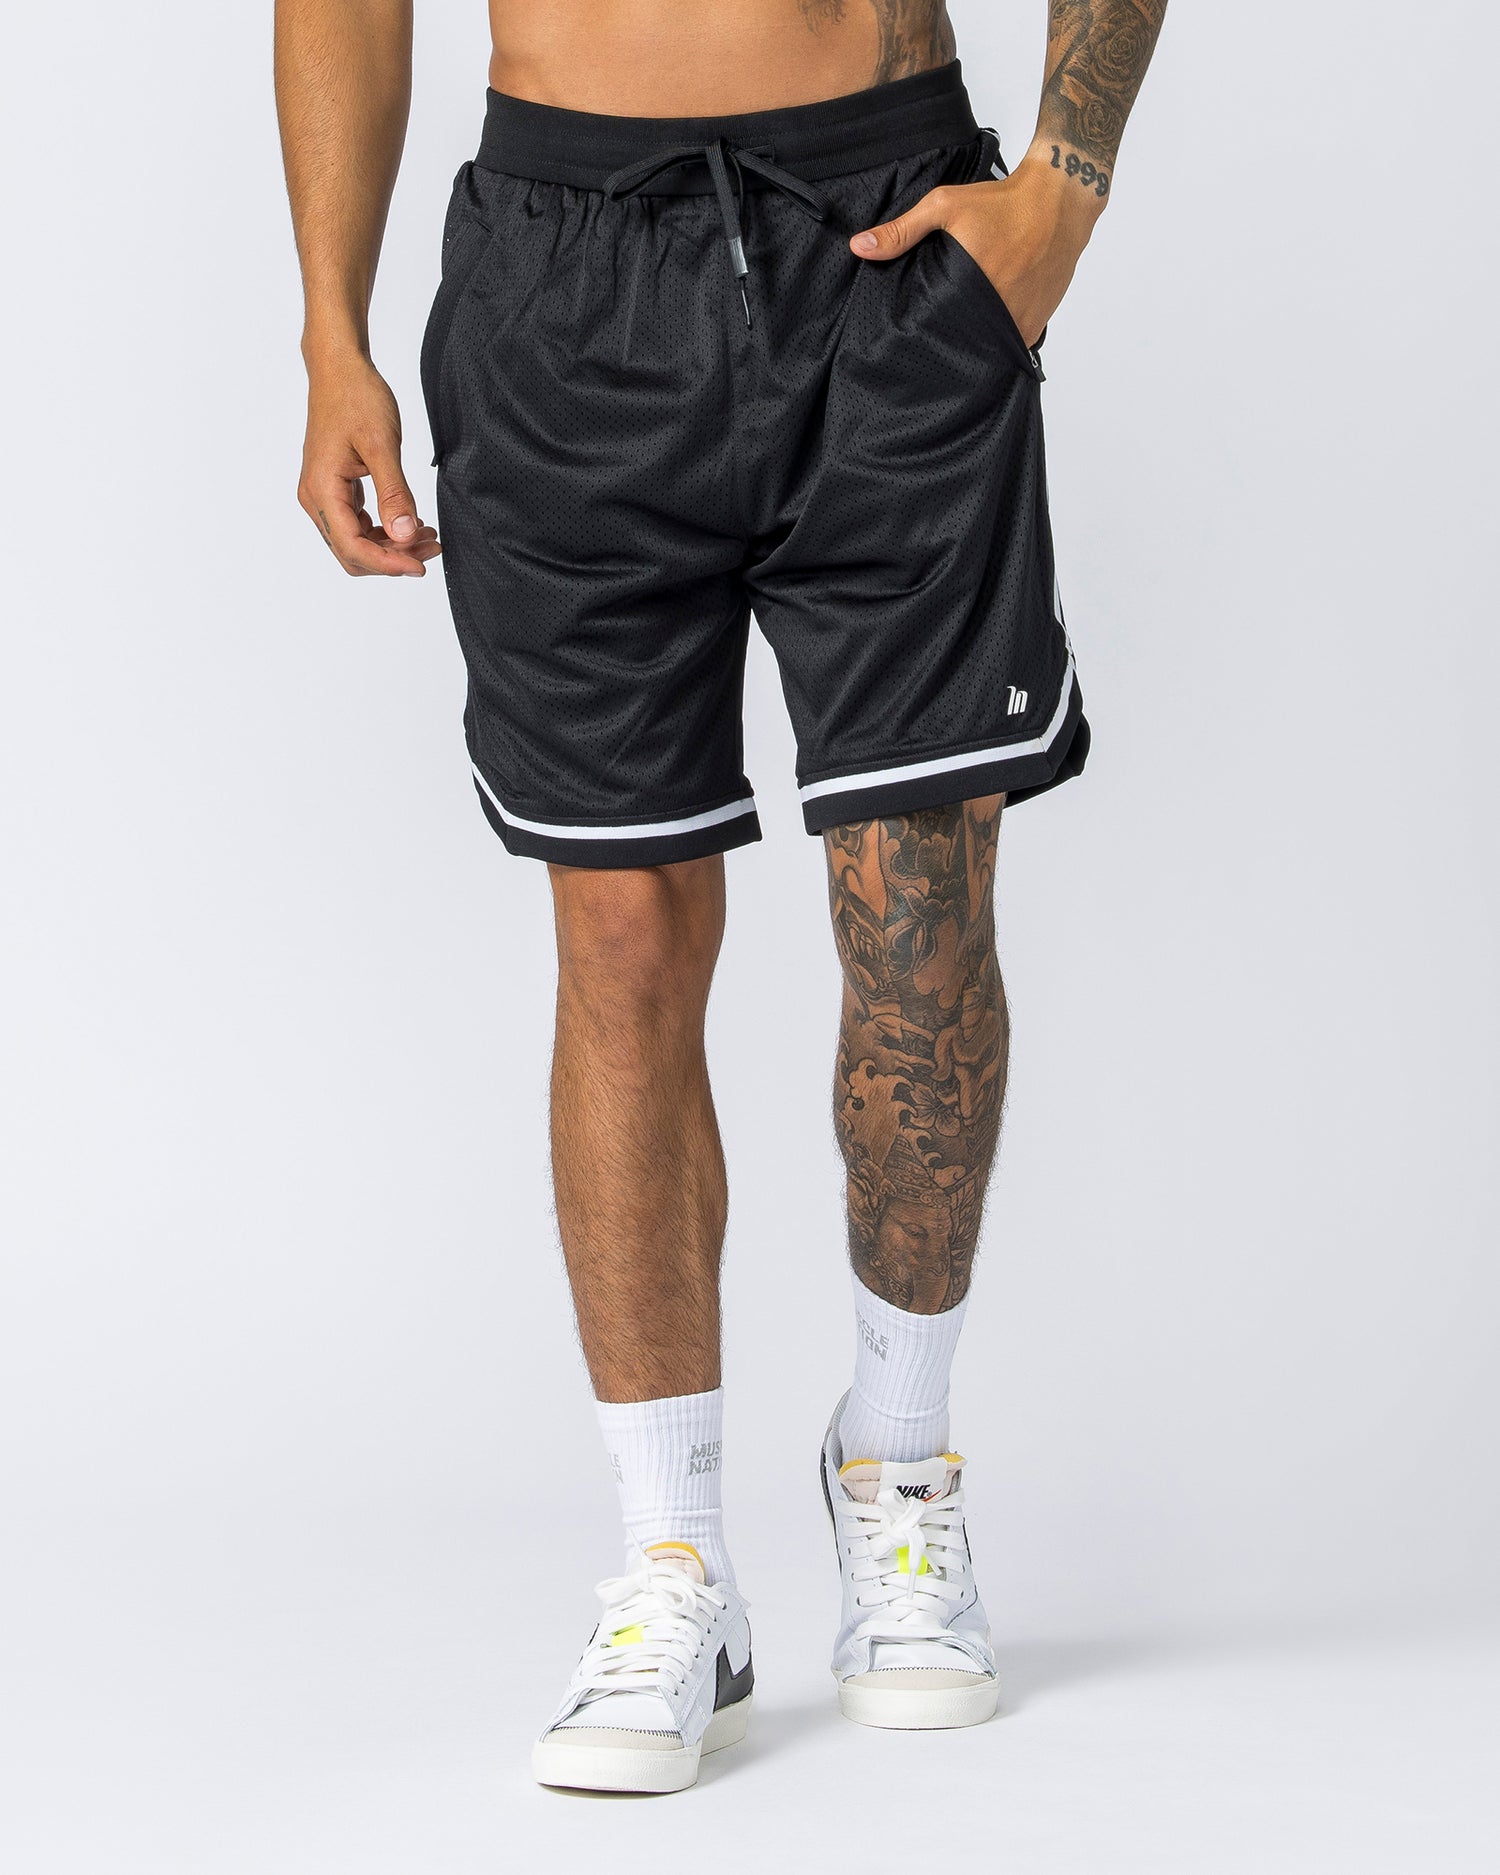 Mens 8" Basketball Shorts - Black